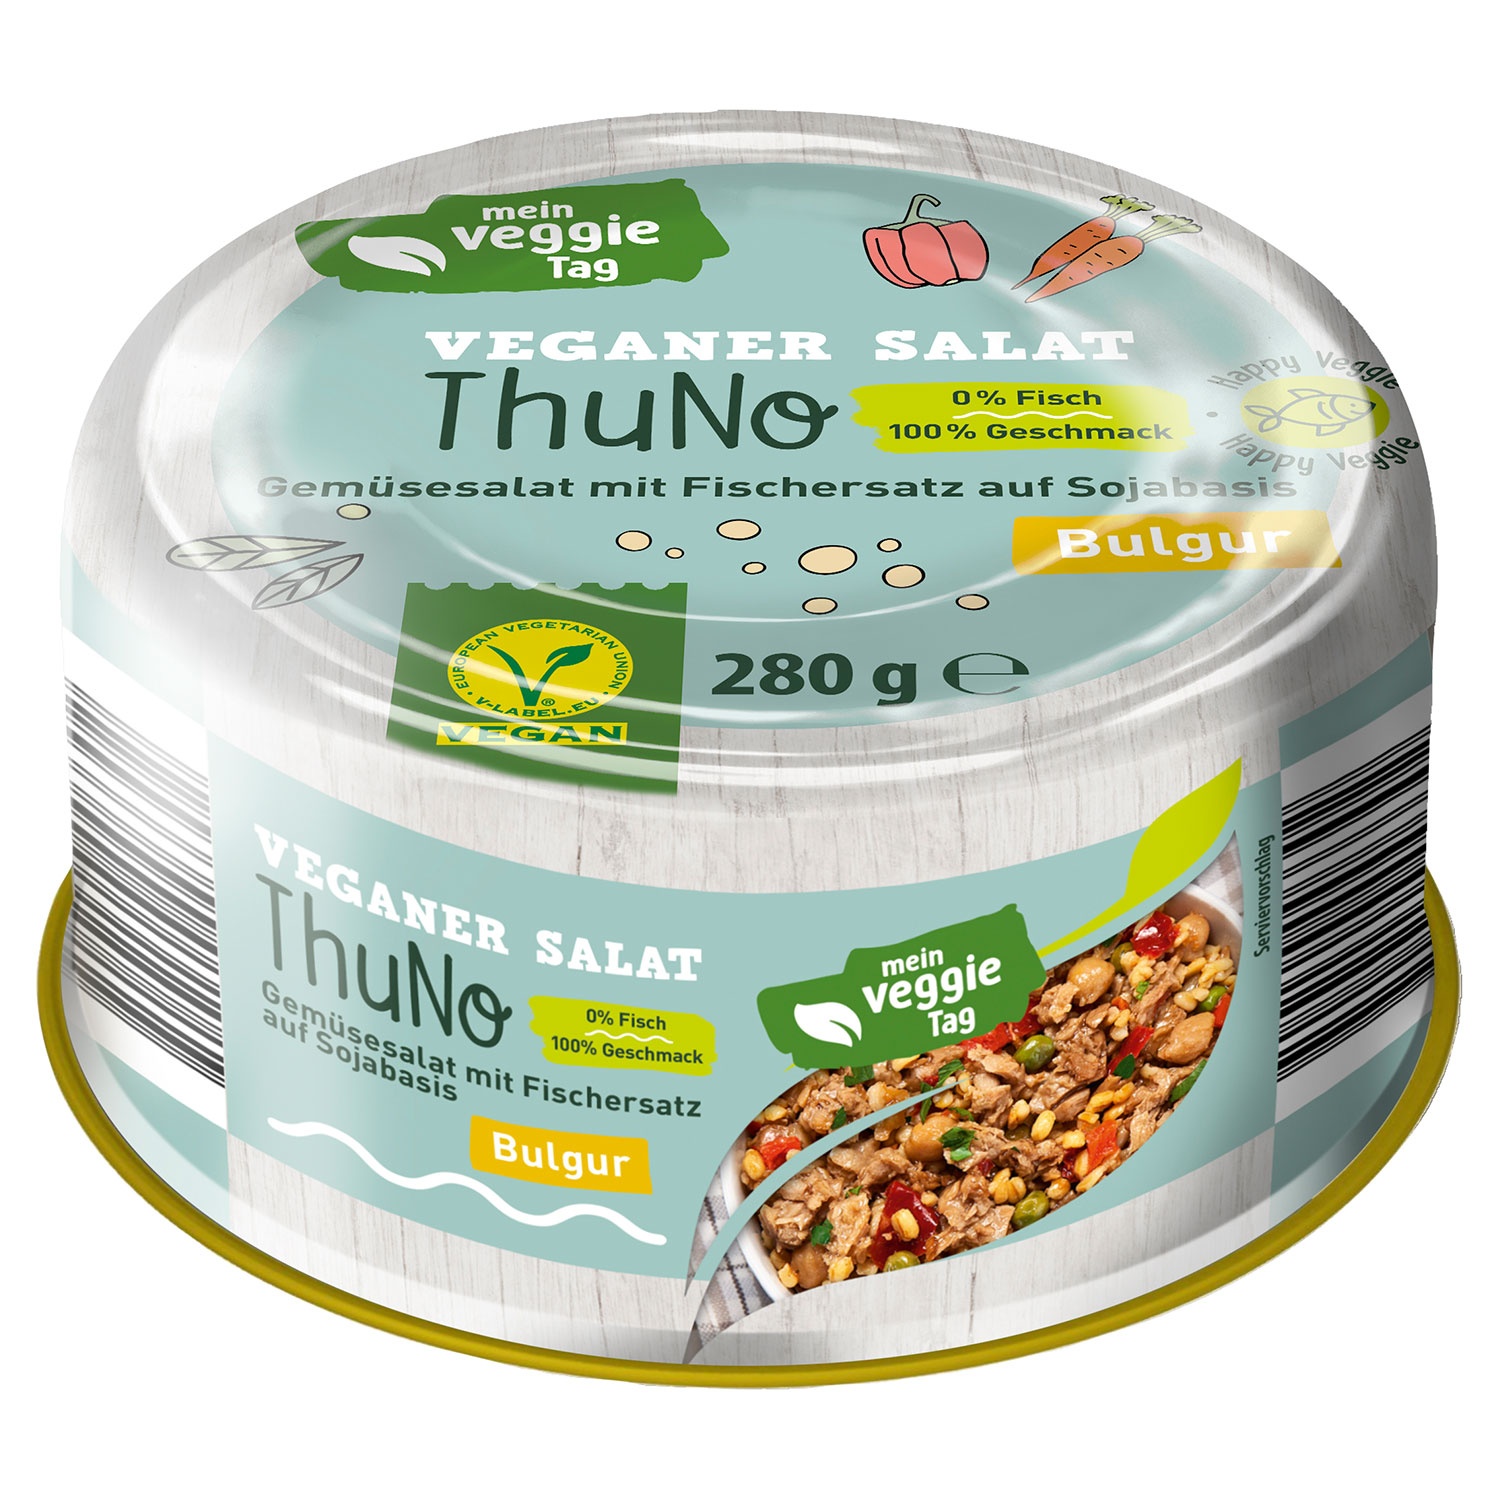 MEIN VEGGIE TAG Veganer Salat ThuNo 280 g